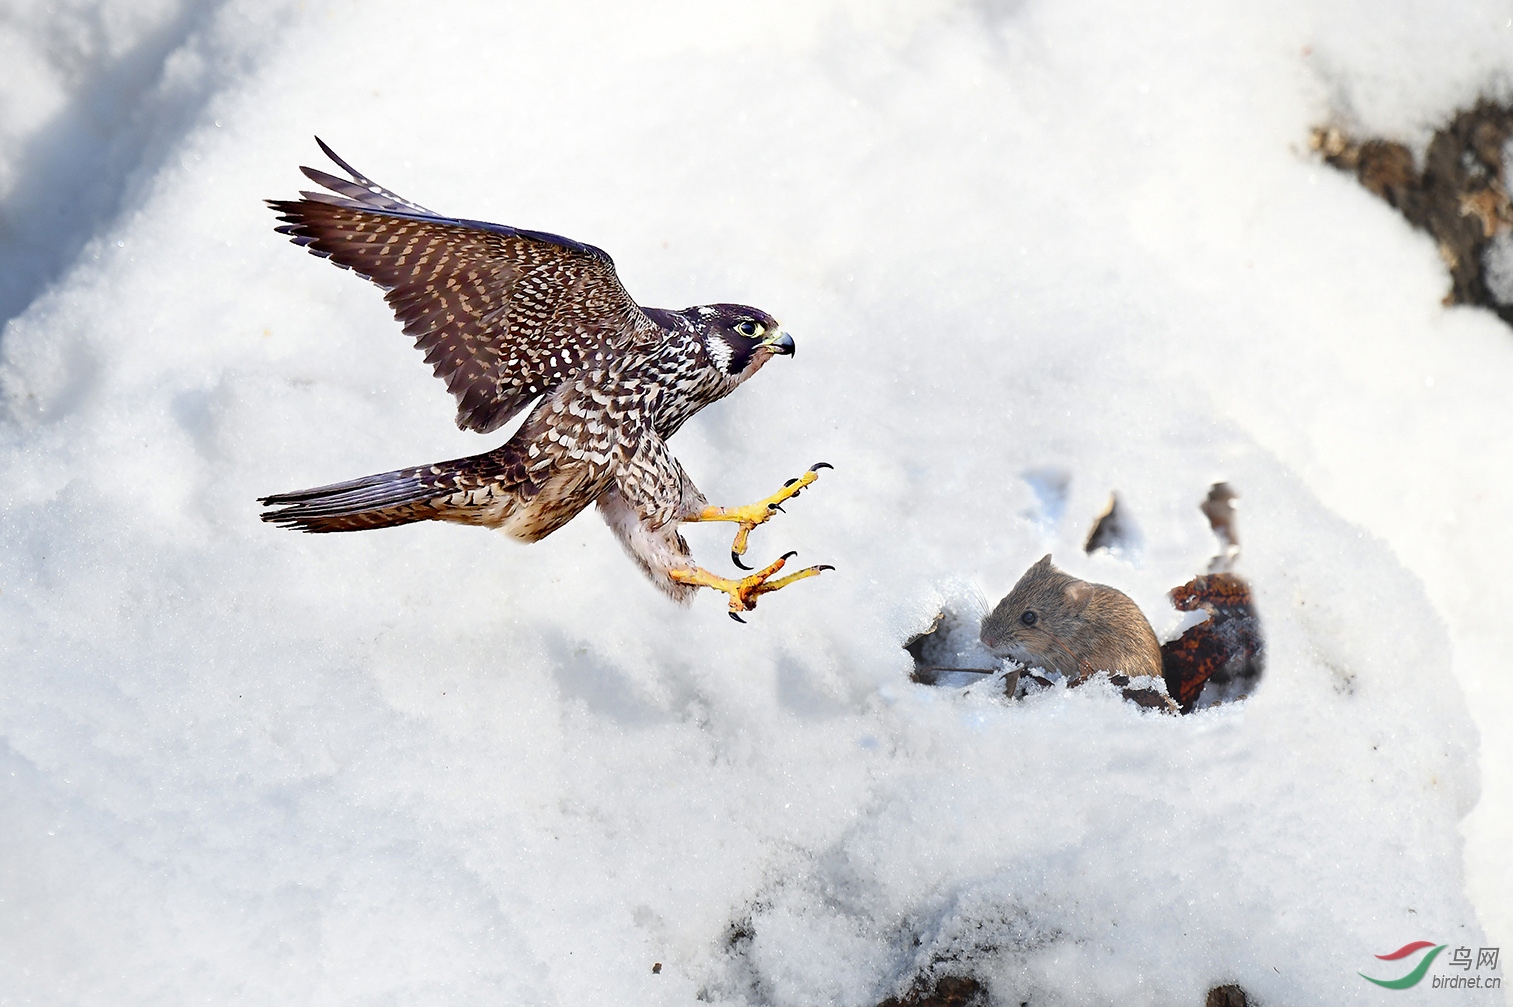 雪地捕鸟动作描写图片